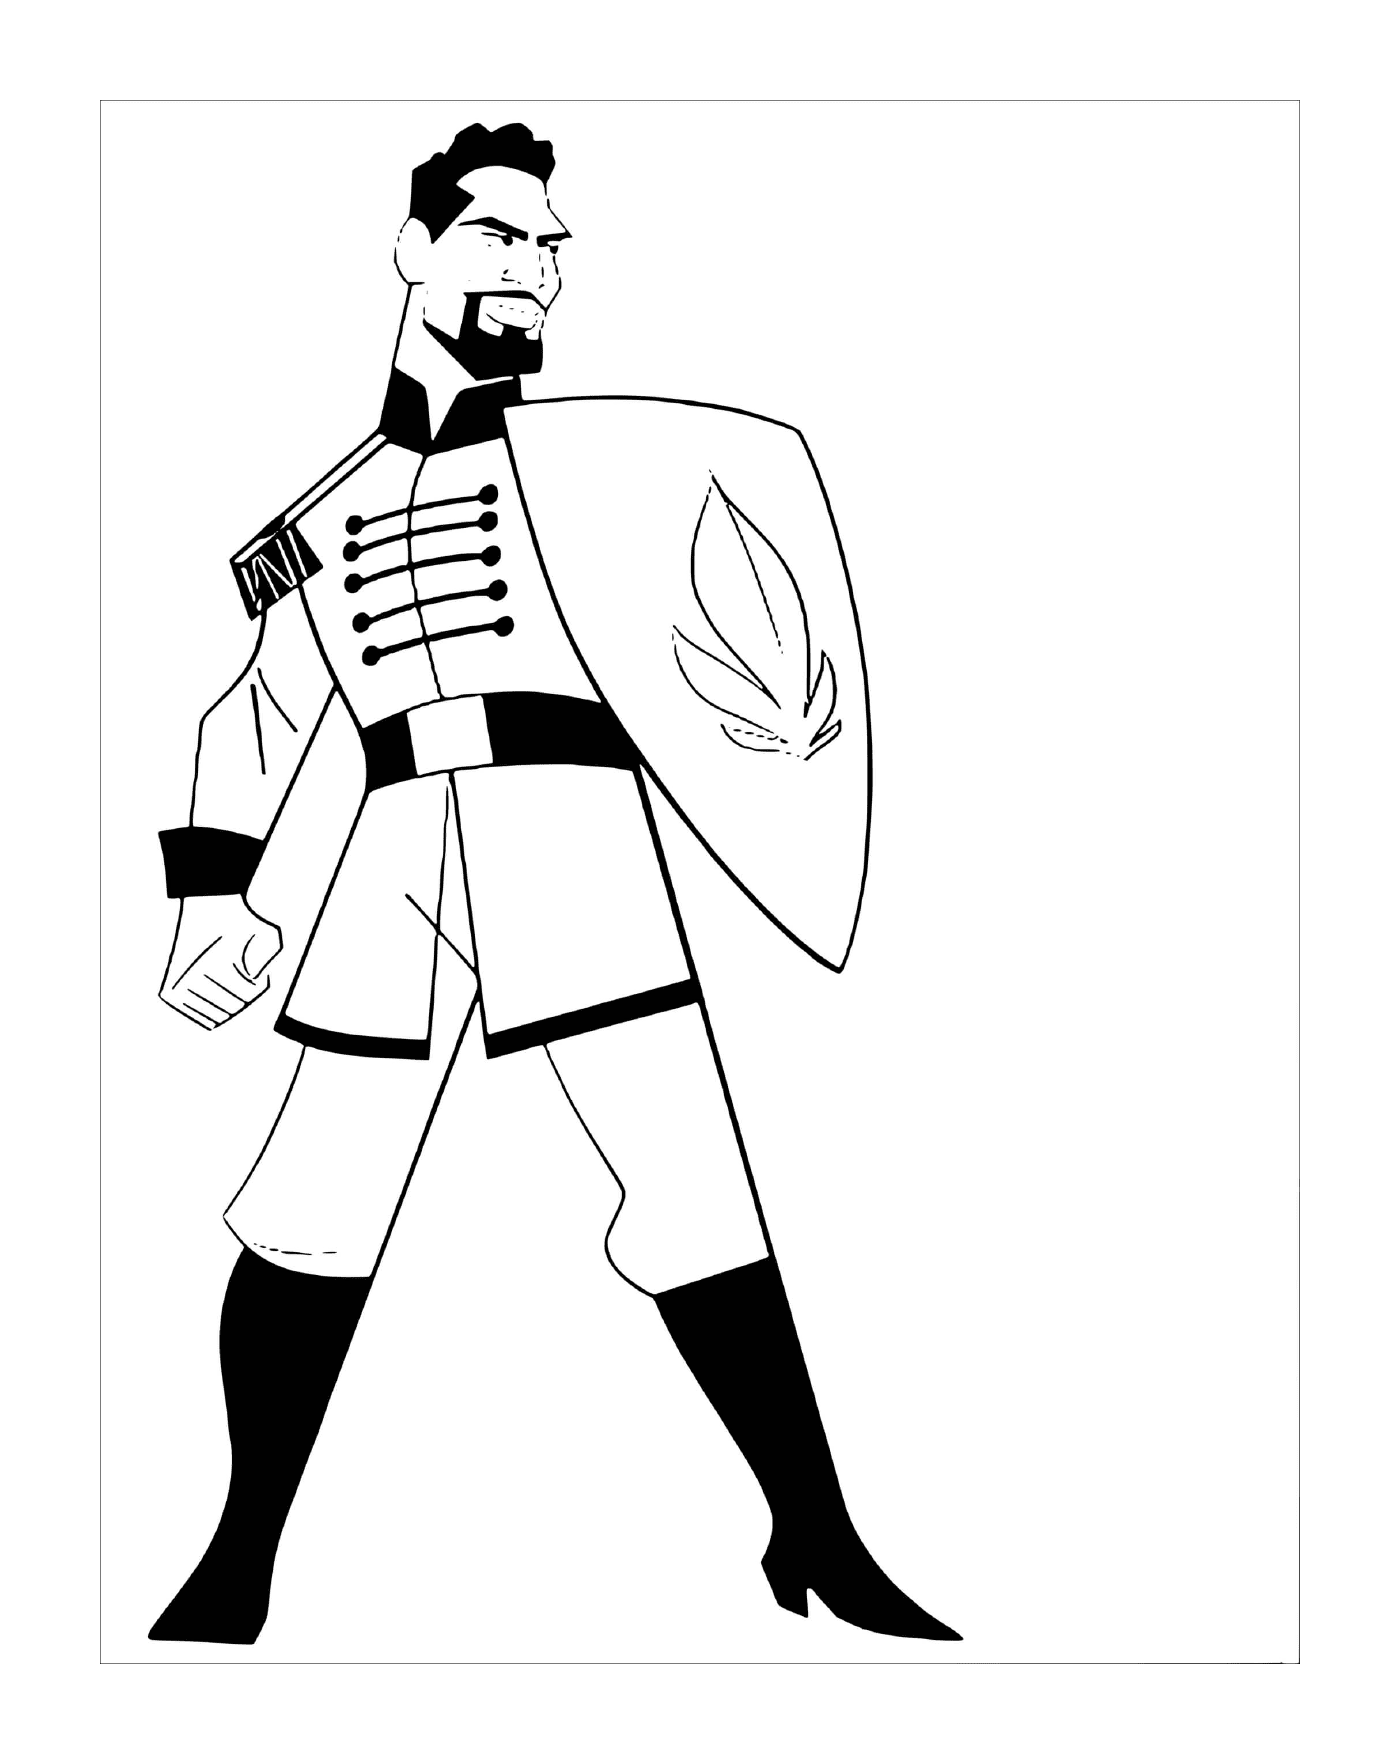   Lieutenant Mattias, héroïque 